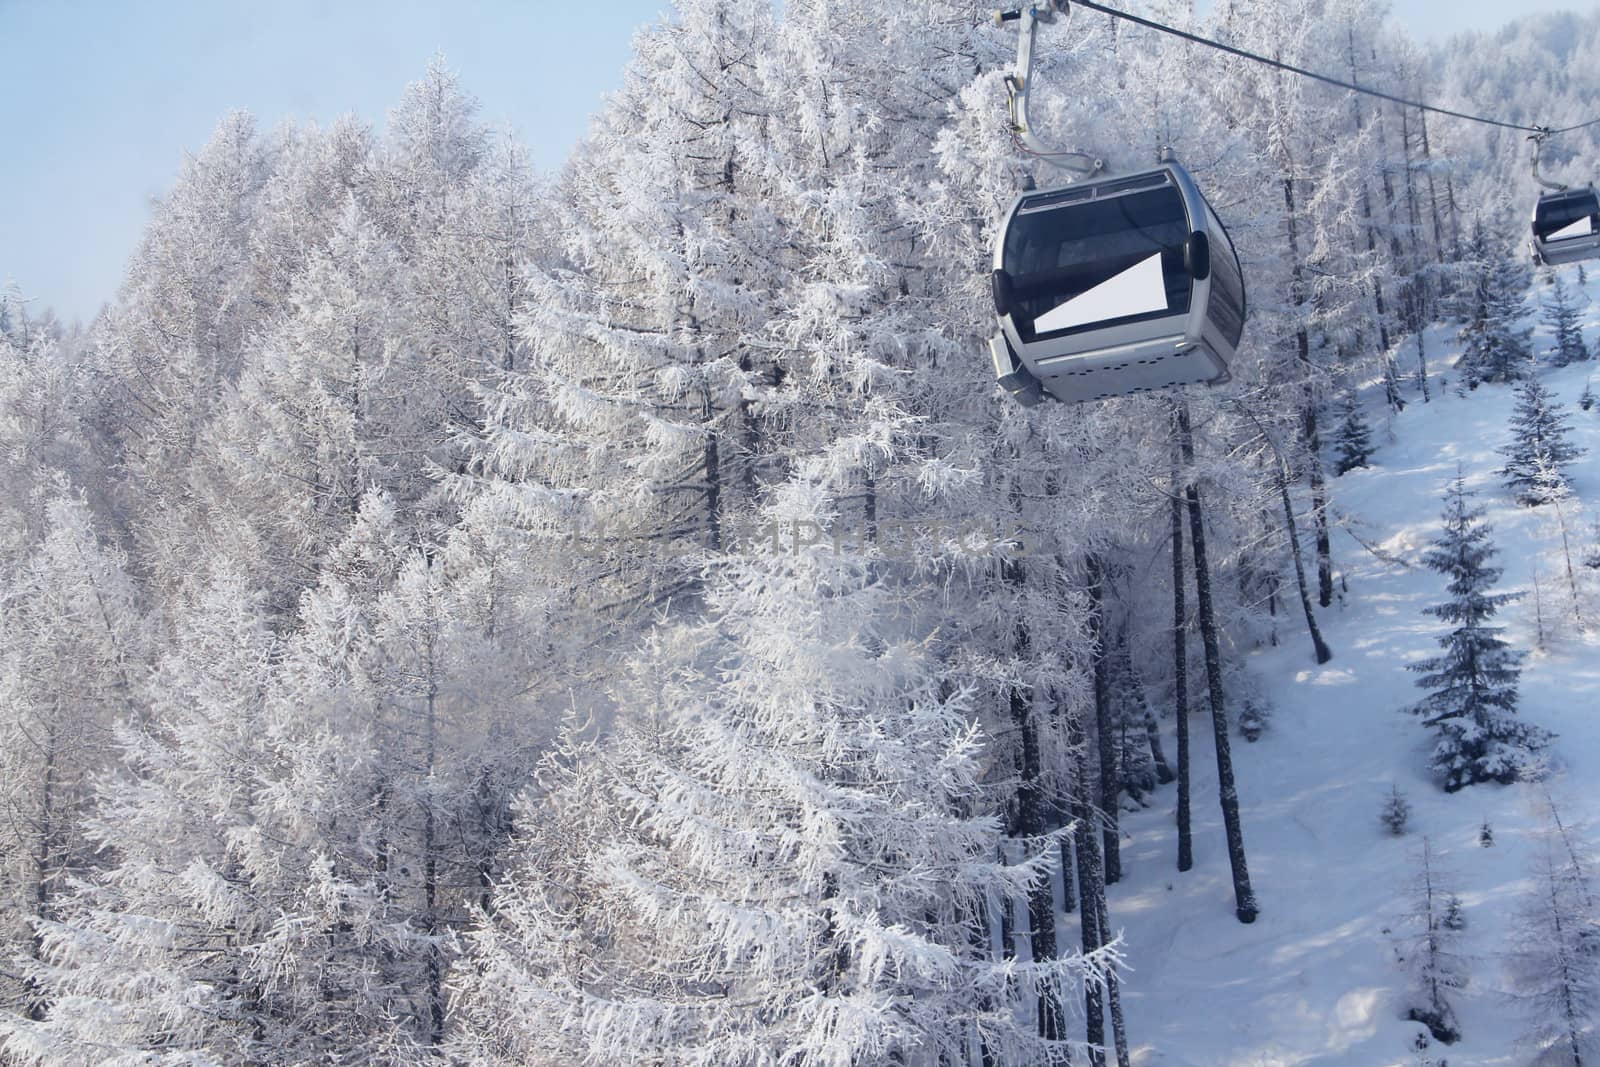 Chair lift between beautiful firs in winter mountains by destillat